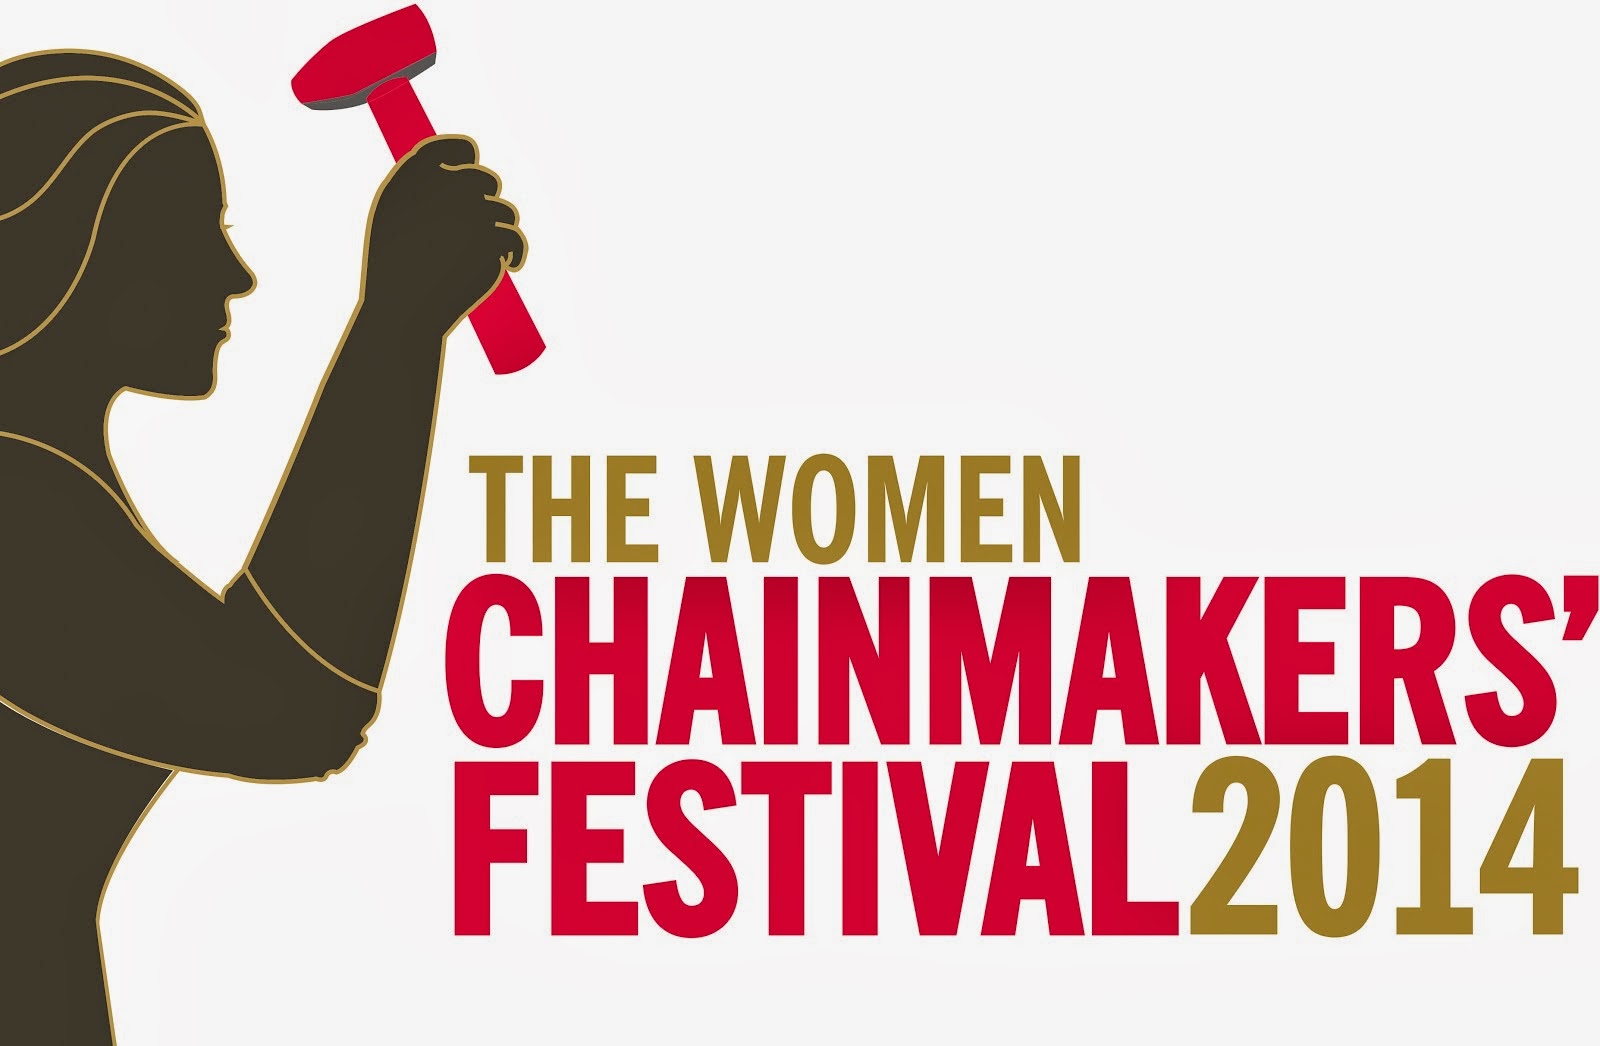 Festival logo 2014